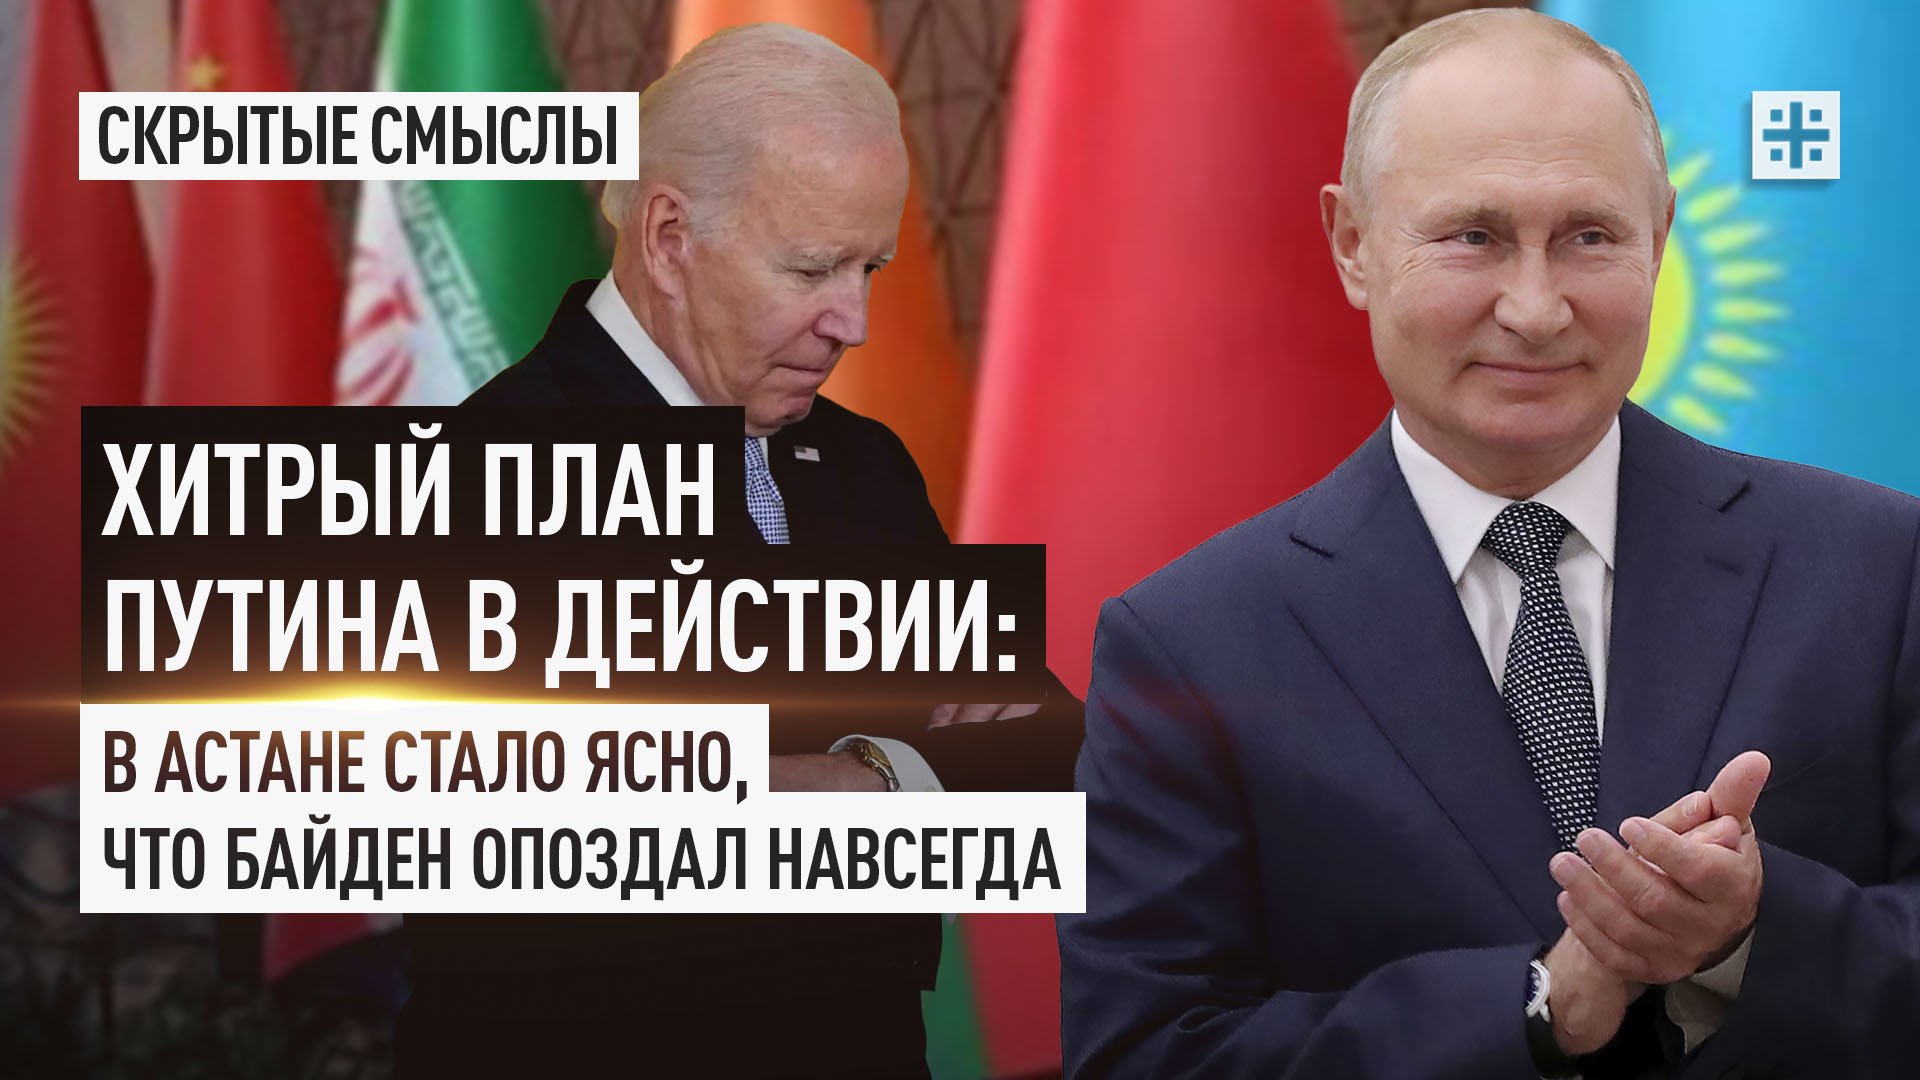 Хитрый план Путина в действии: В Астане стало ясно, что Байден опоздал навсегда